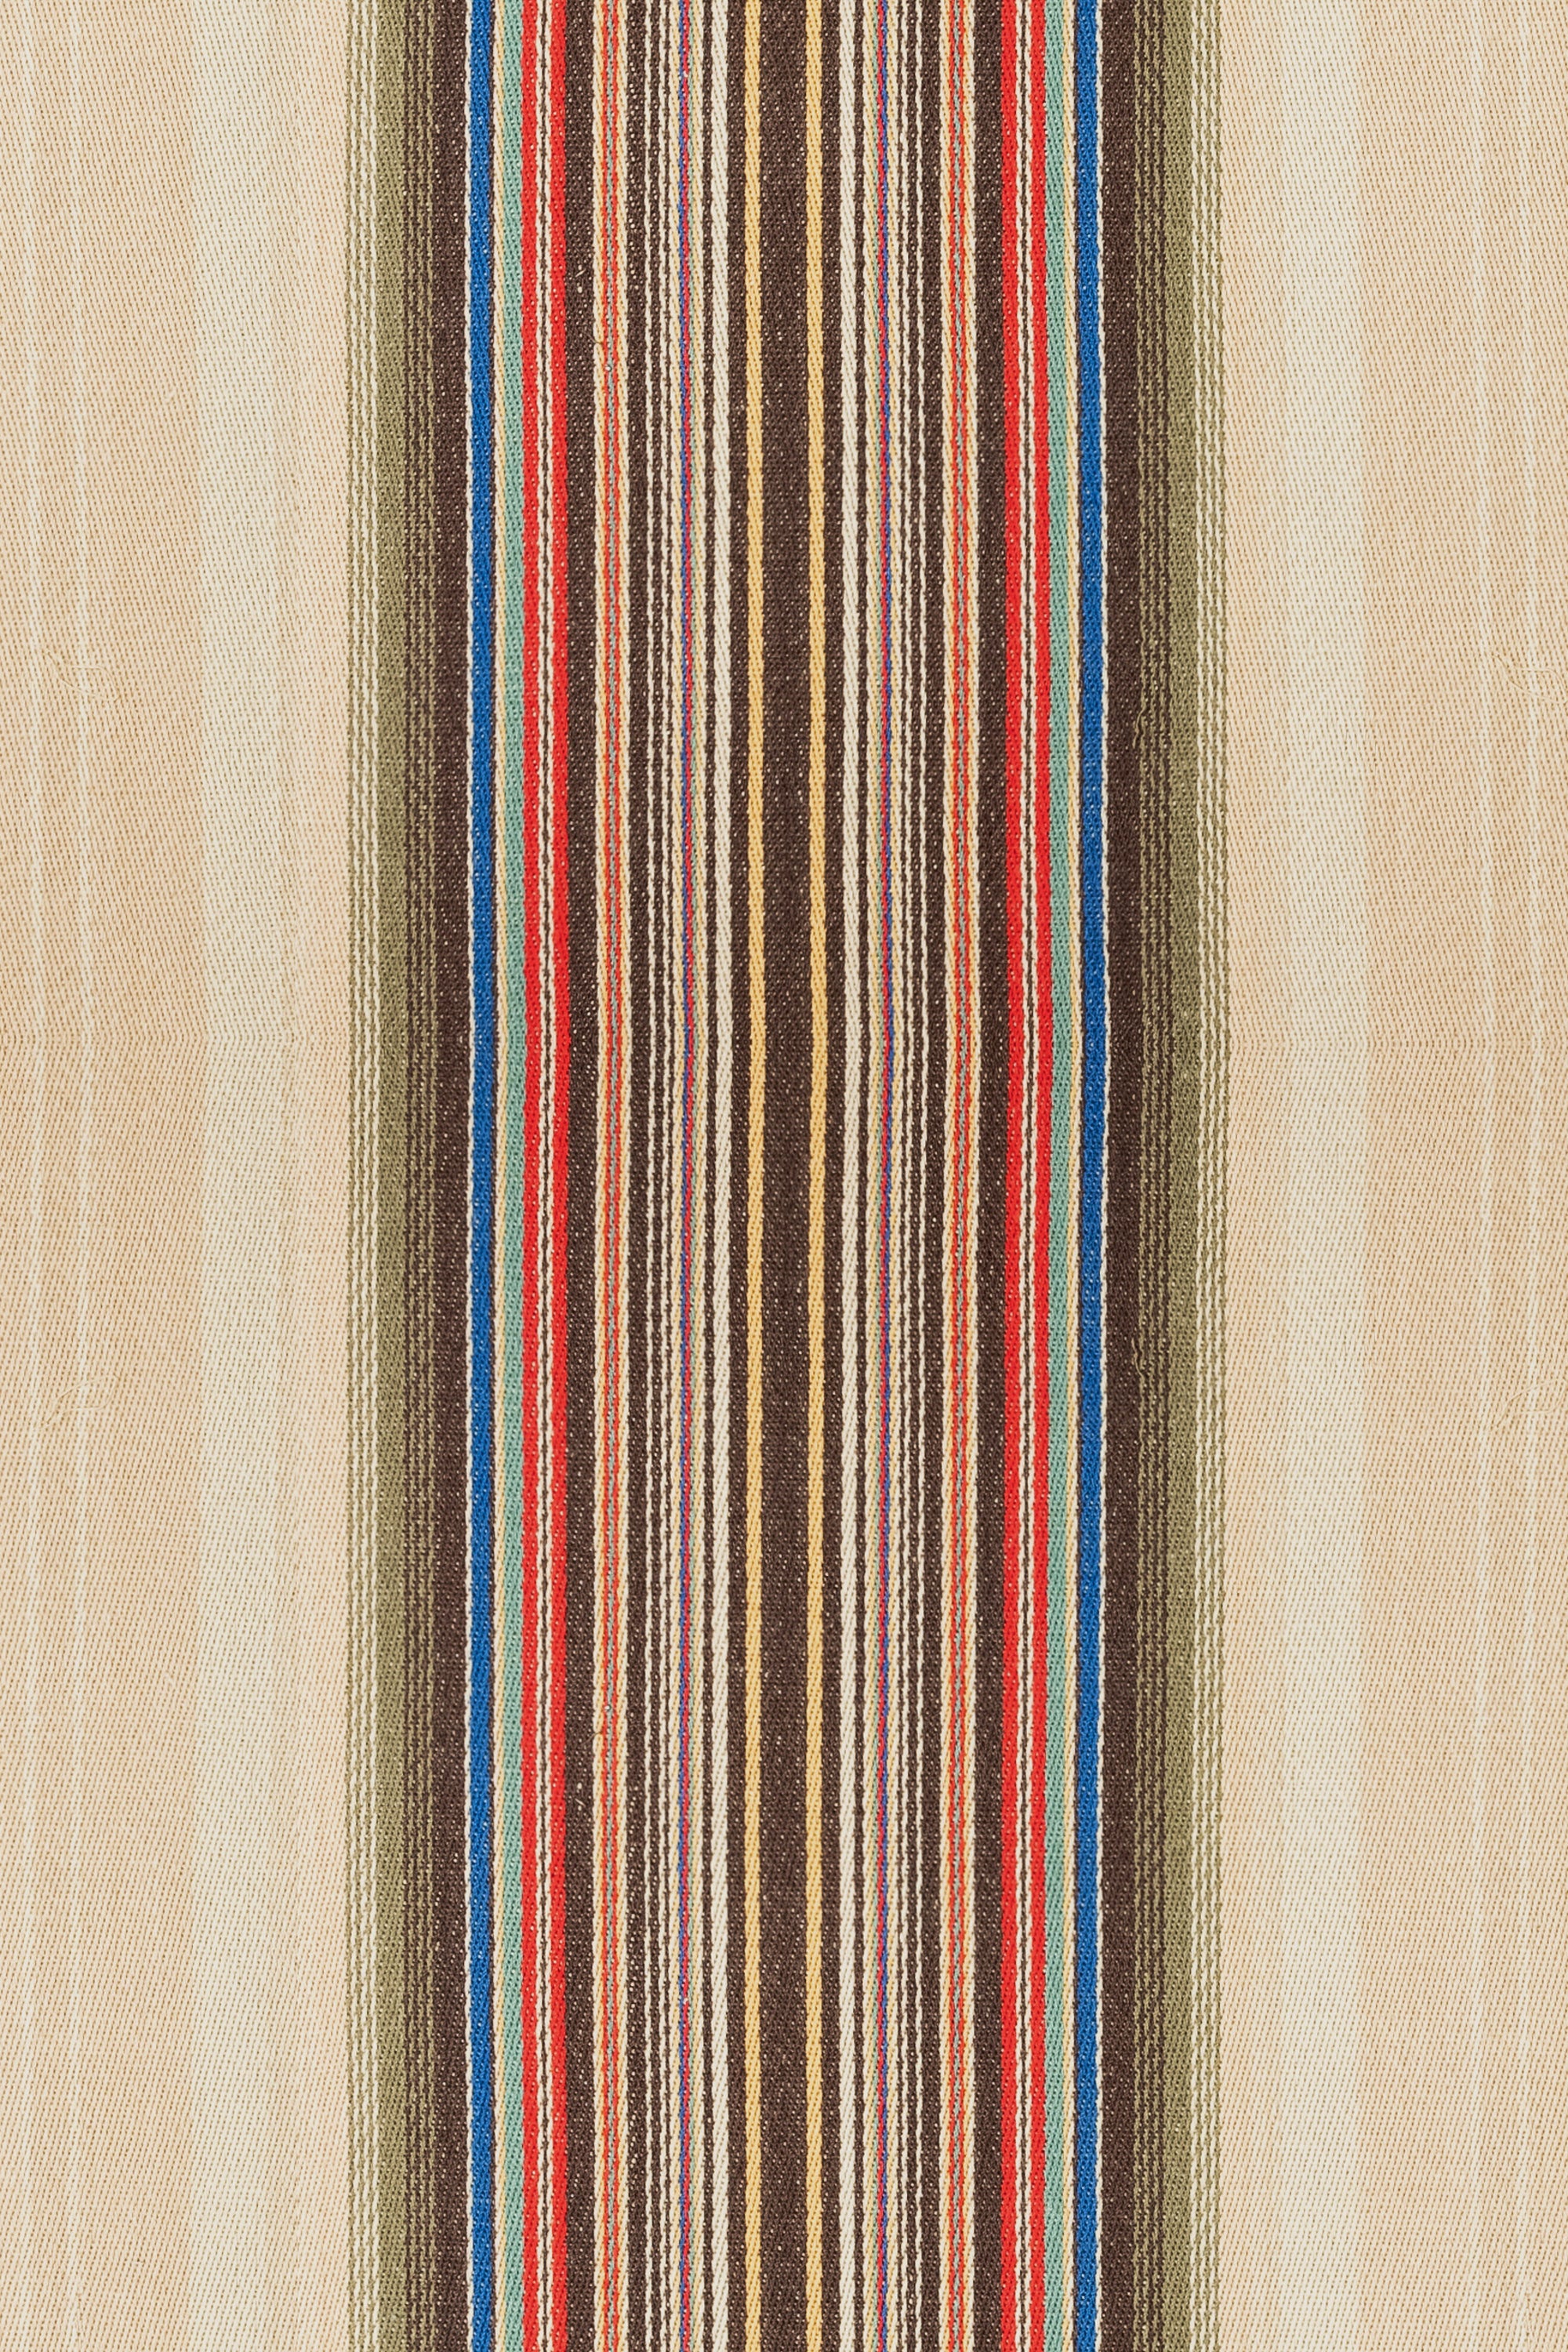 Fabric by the Yard, Serape, San Saba, Tortilla, 102